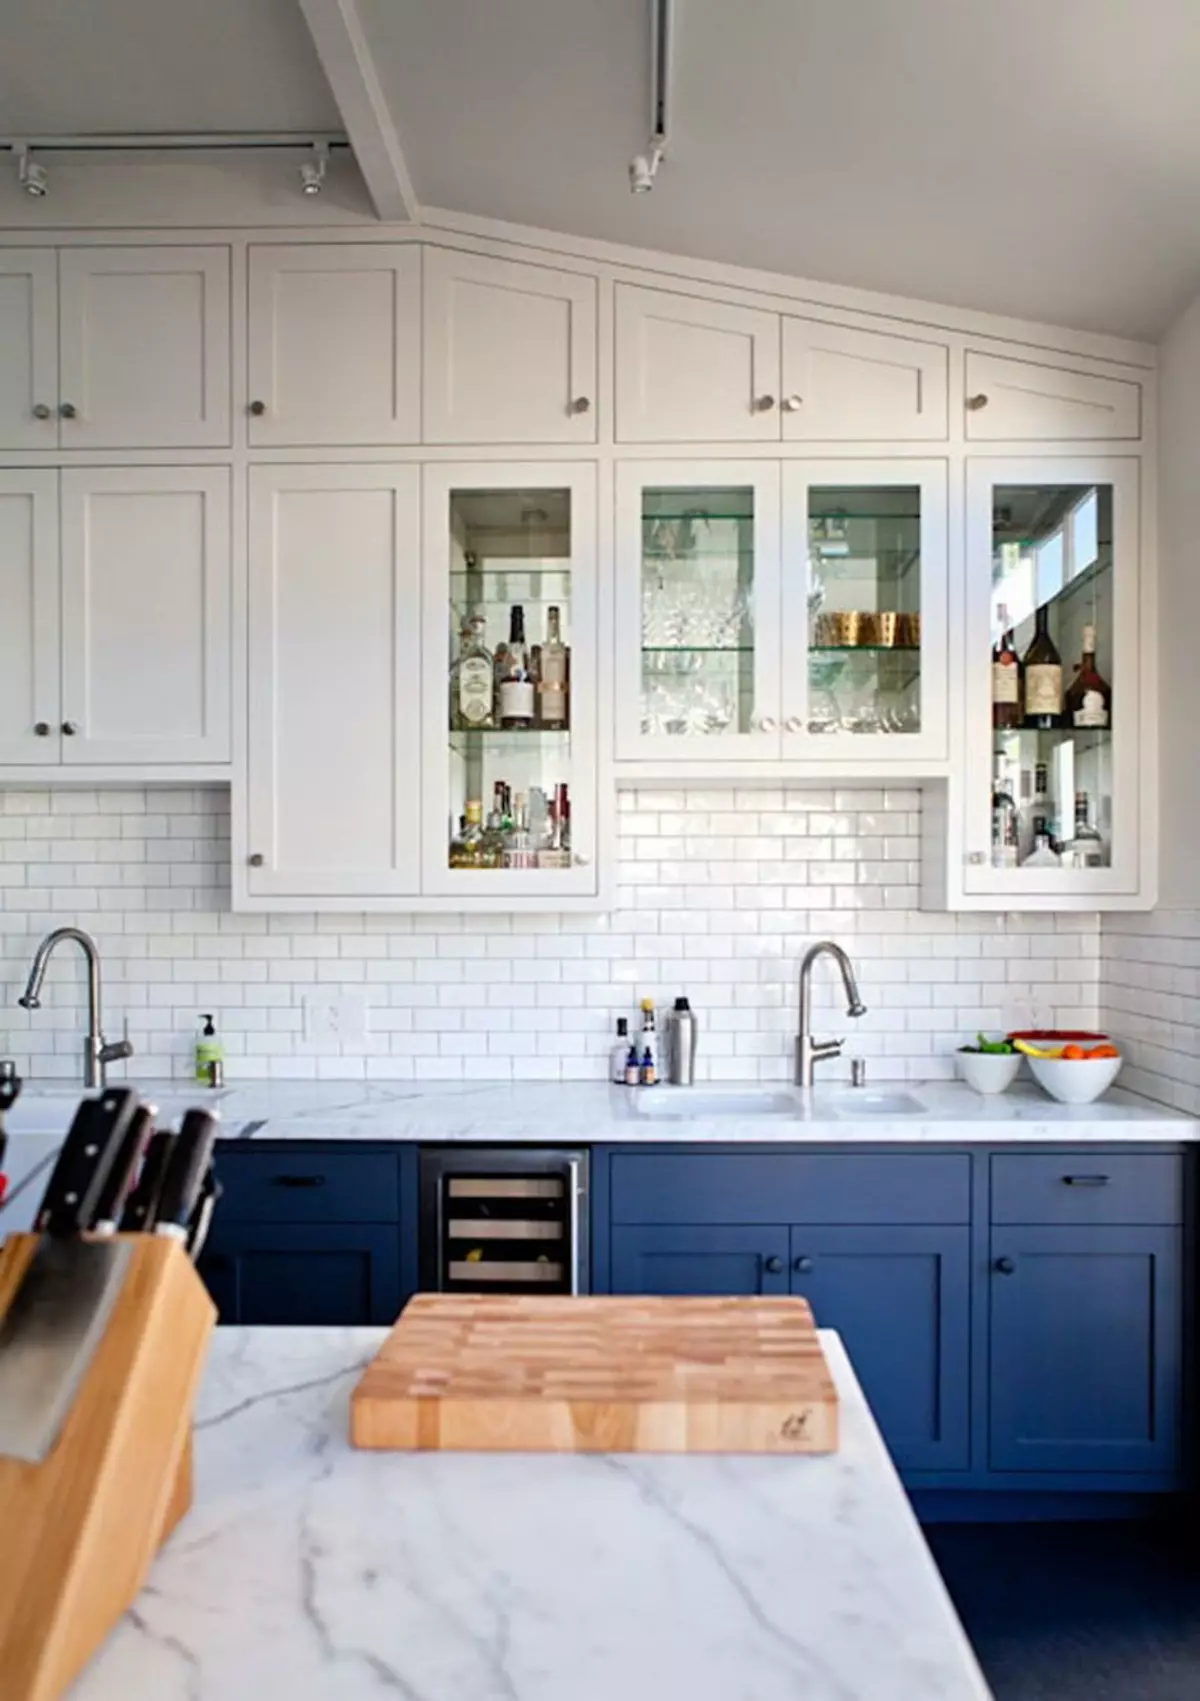 Սպիտակ-կապույտ խոհանոց (64 լուսանկար). Խոհանոցի ականջակալների առանձնահատկություններ սպիտակ-կապույտ գույնի խոհանոցի ինտերիերի ձեւավորման համար, պատերին նման գույներով շեշտադրումներ 9393_4